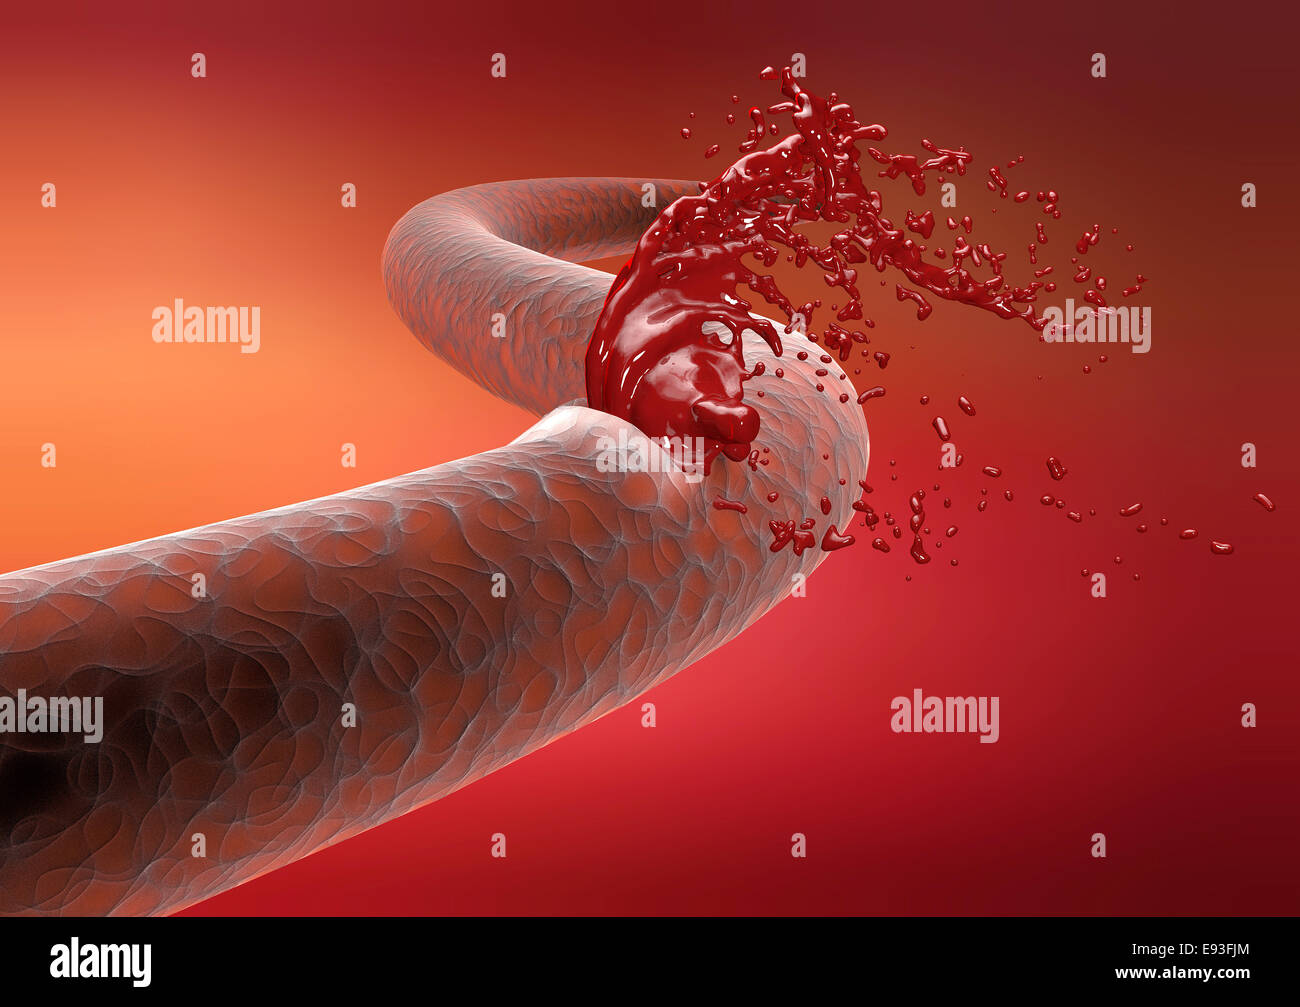 Vene Arterie Bruch Blutungen Blut schneiden Stockfoto